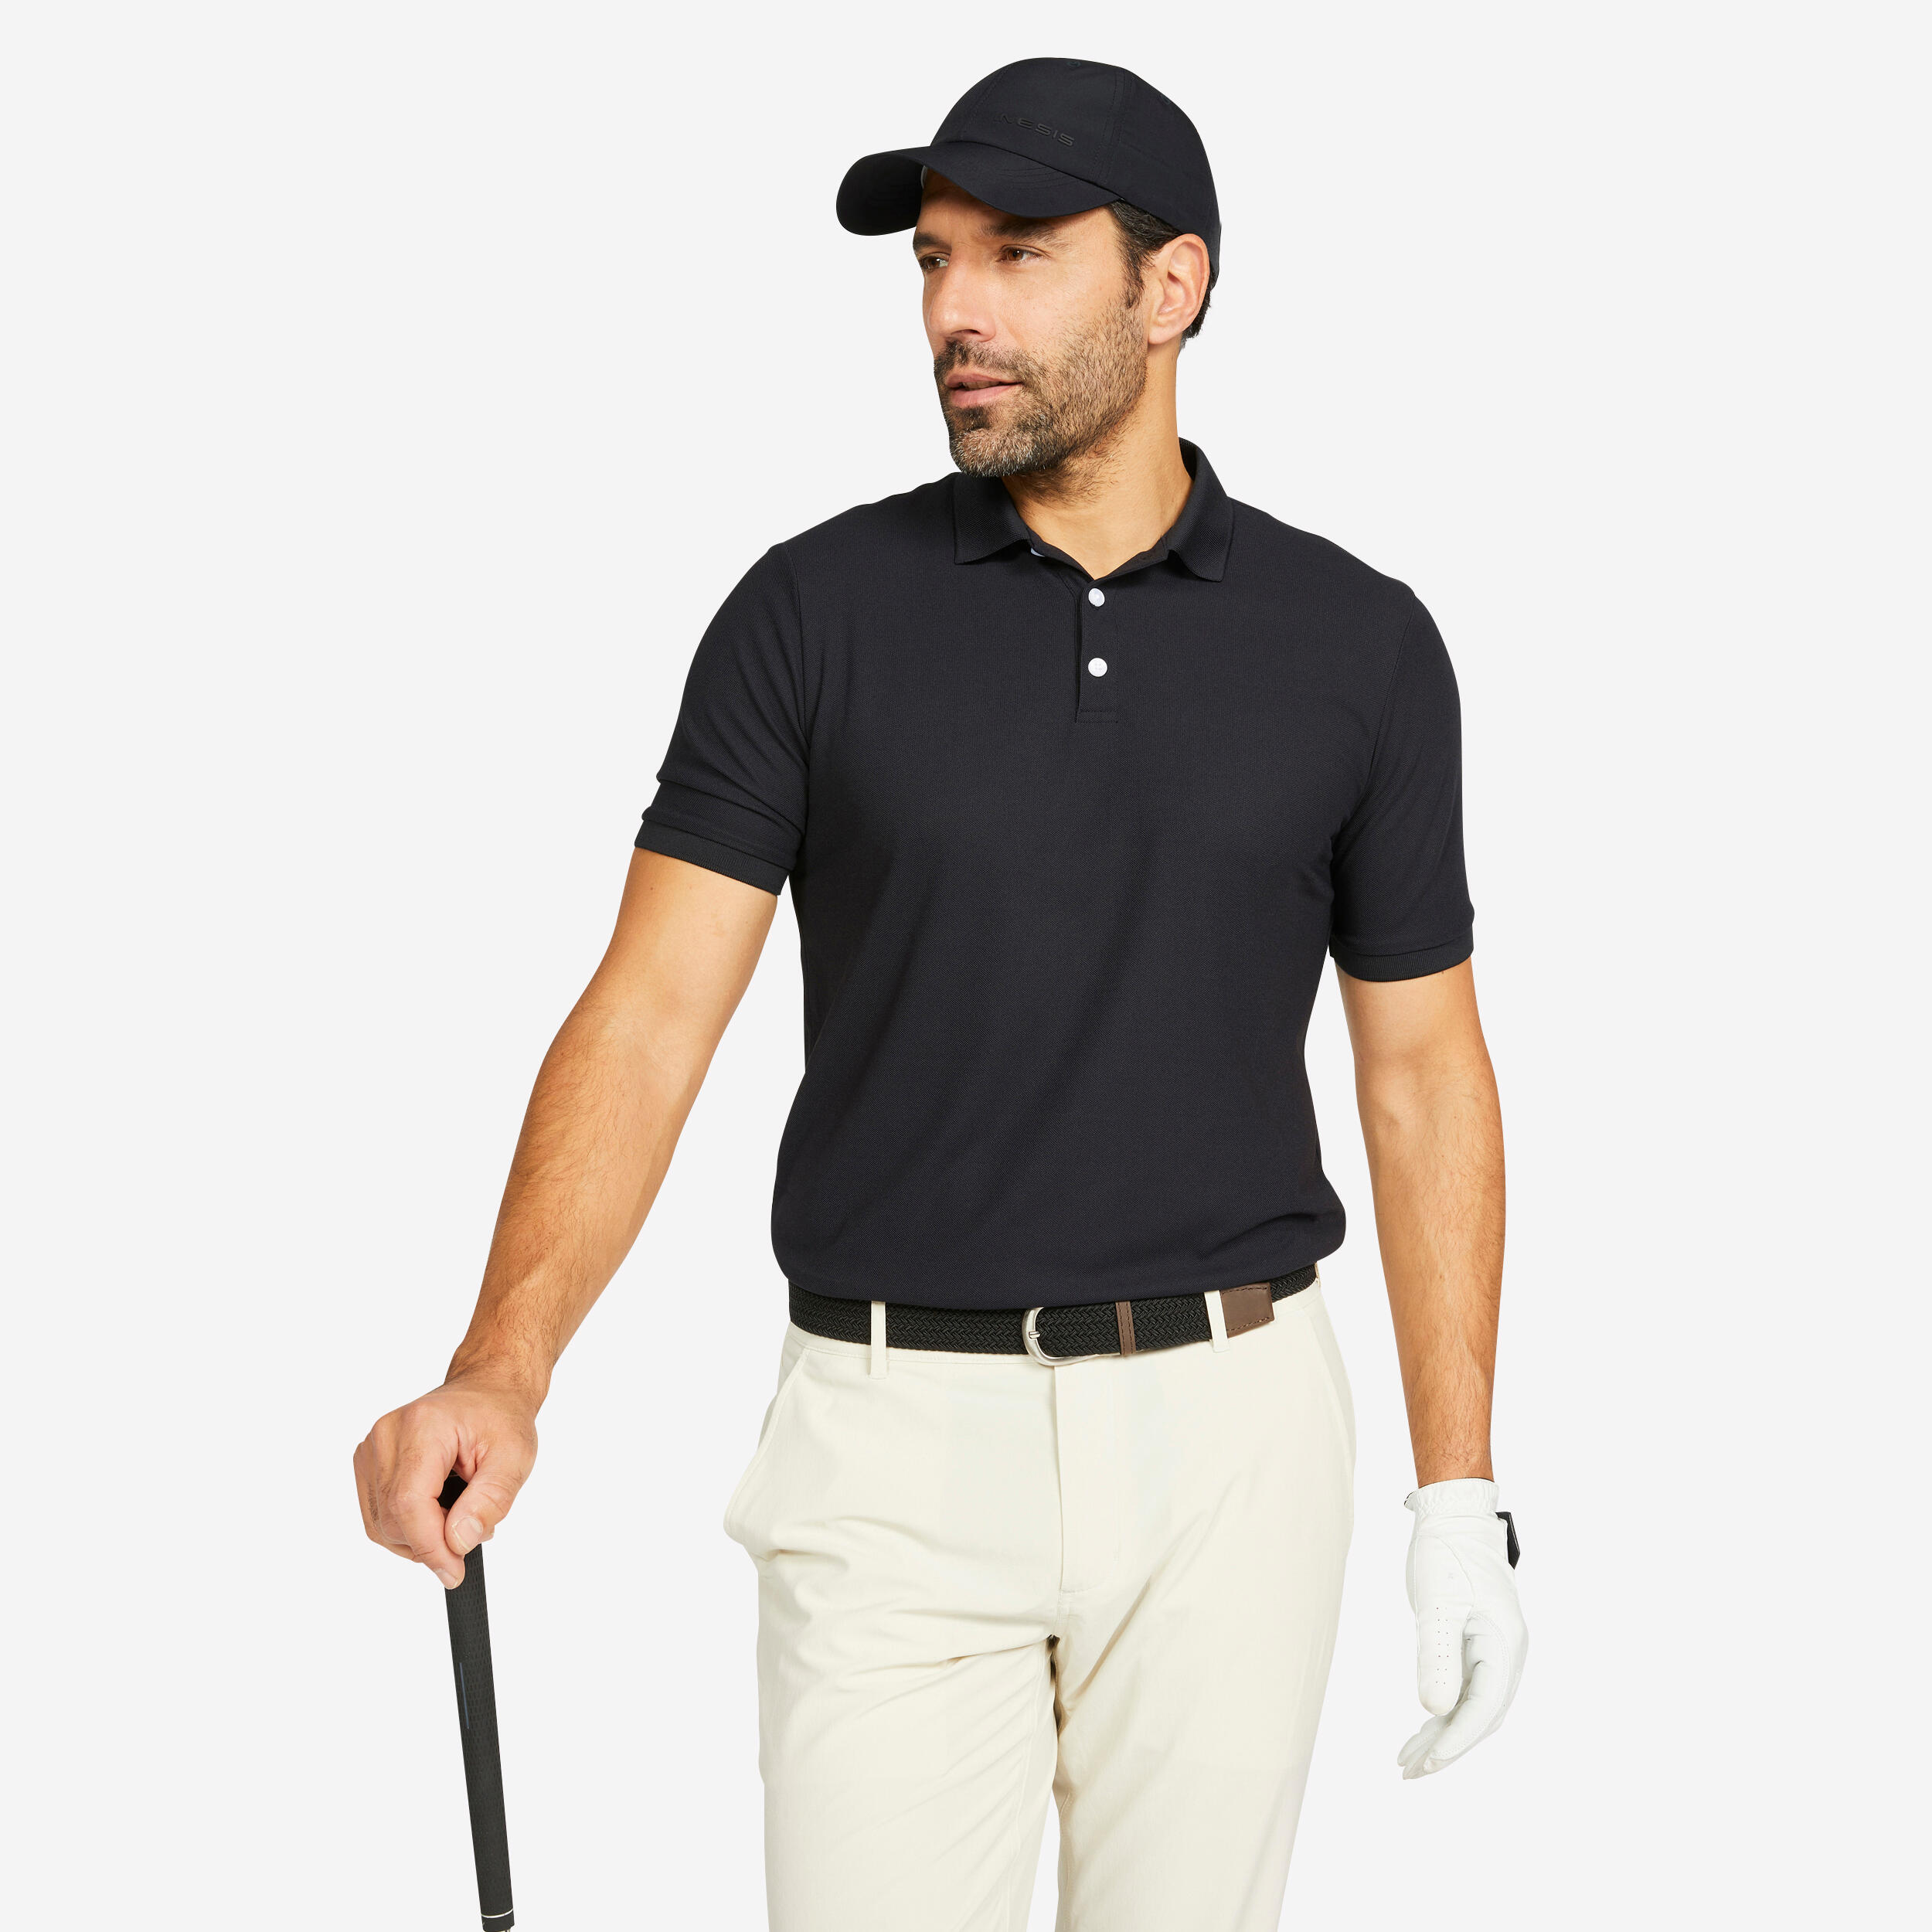 Men’s Golf Polo Shirt